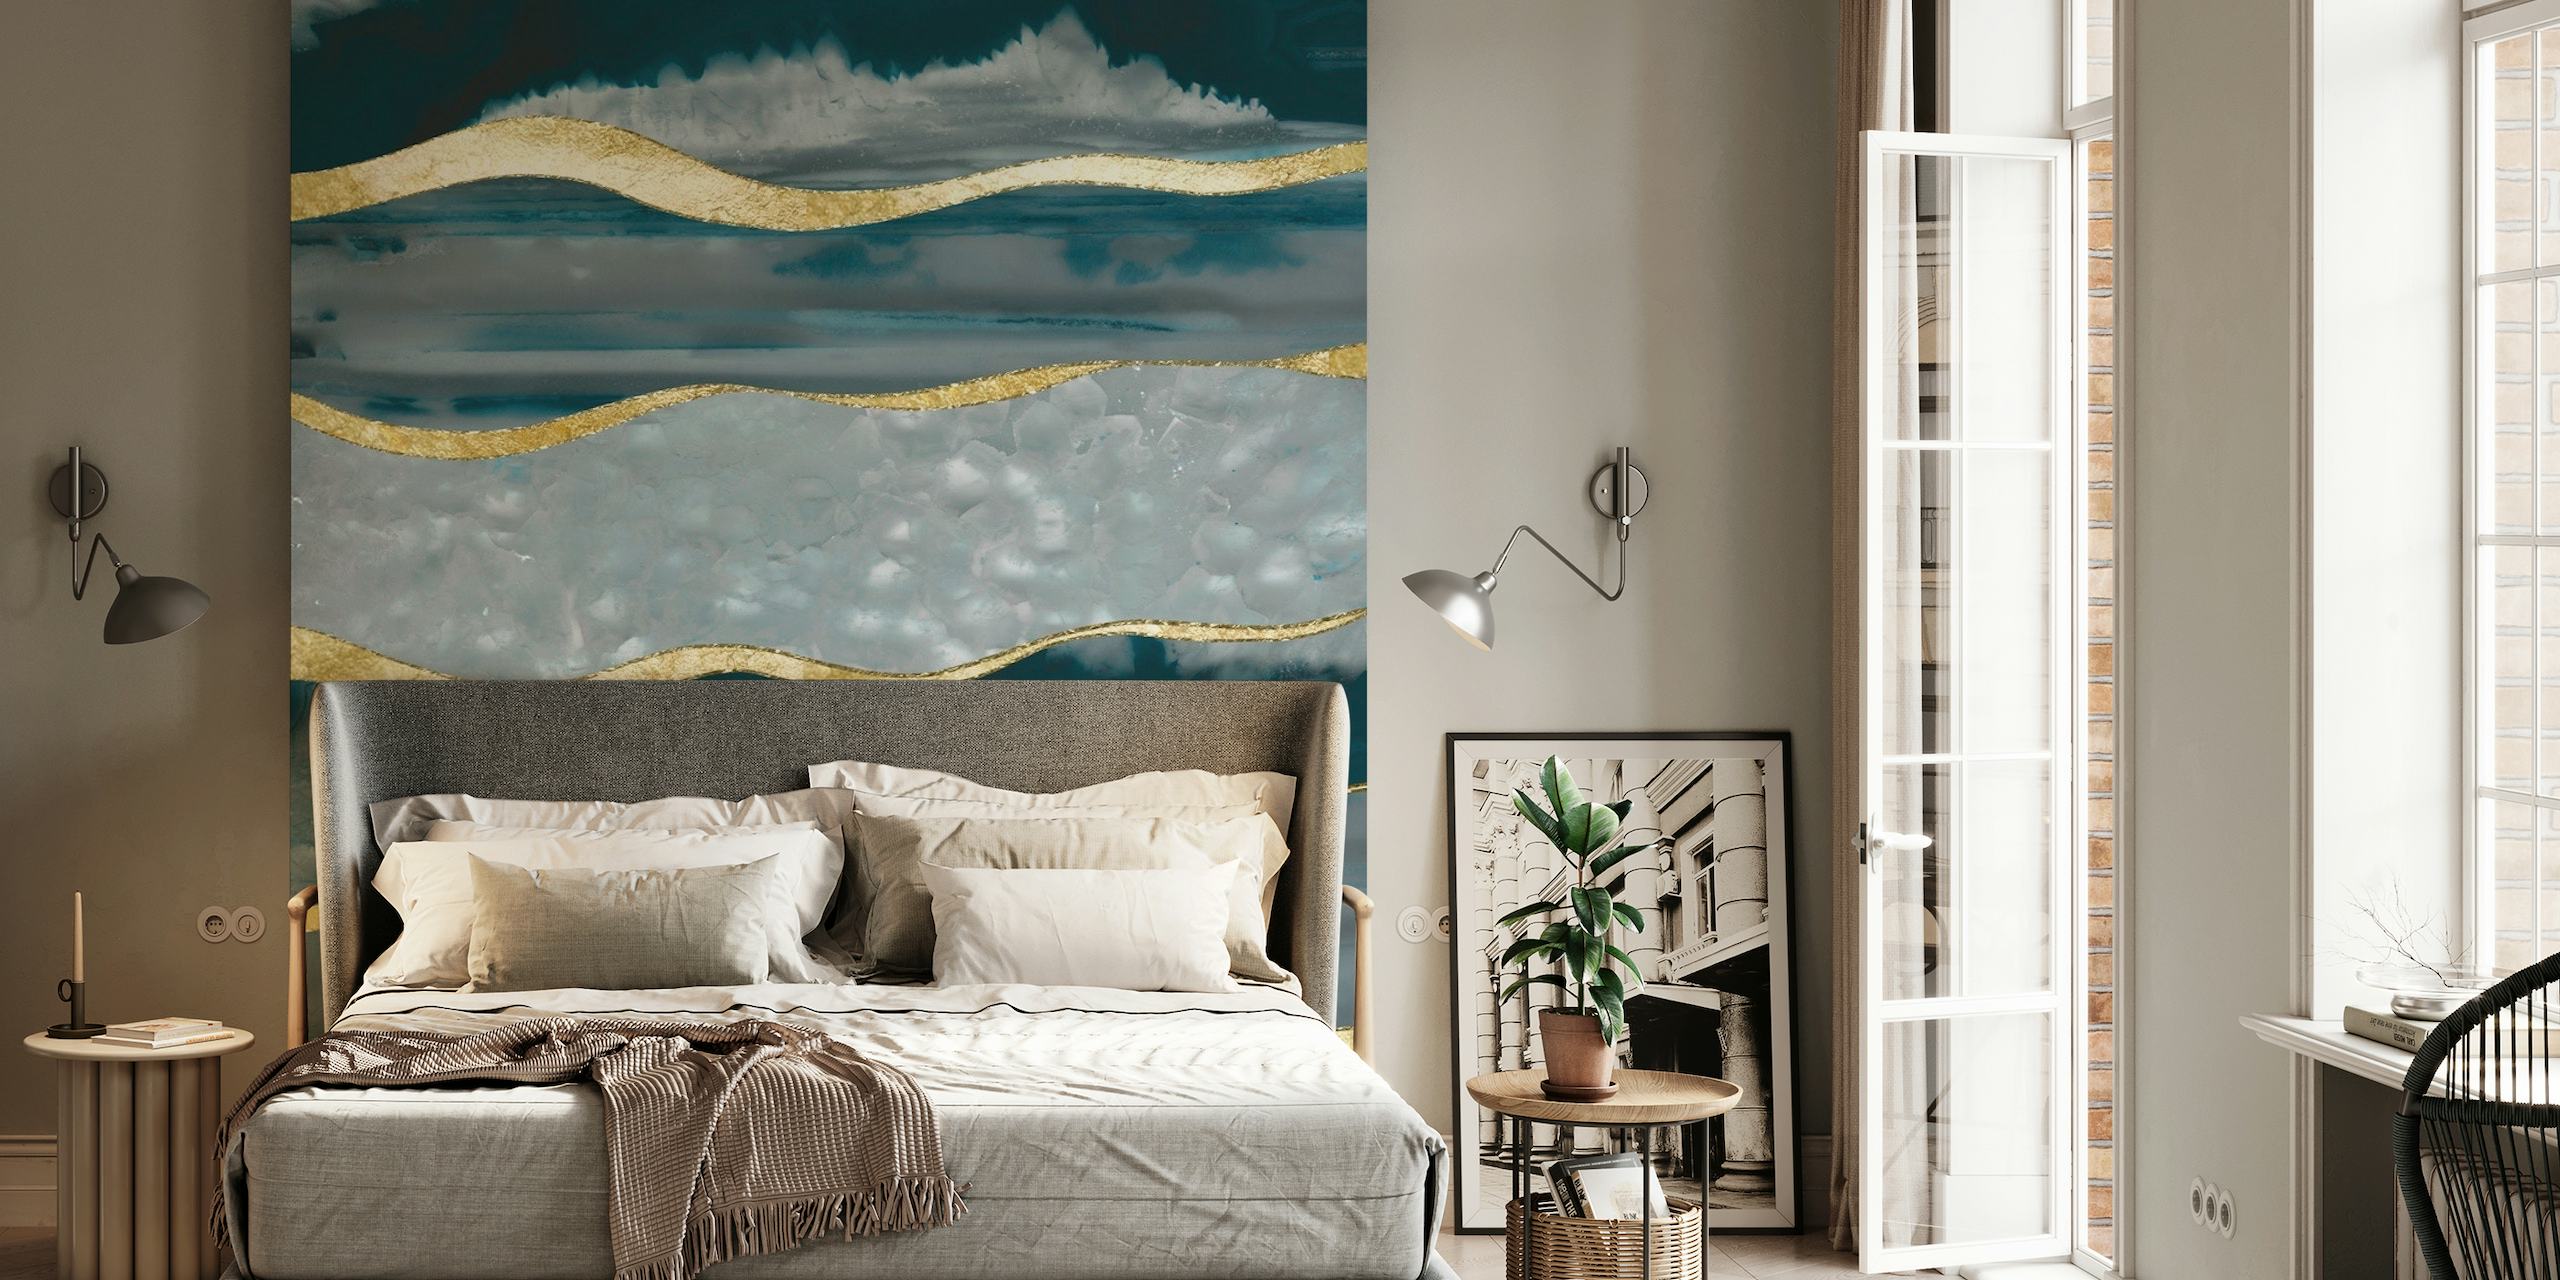 Zidna slika nadahnuta plavozelenim i zlatnim ahatom s luksuznim prugama.